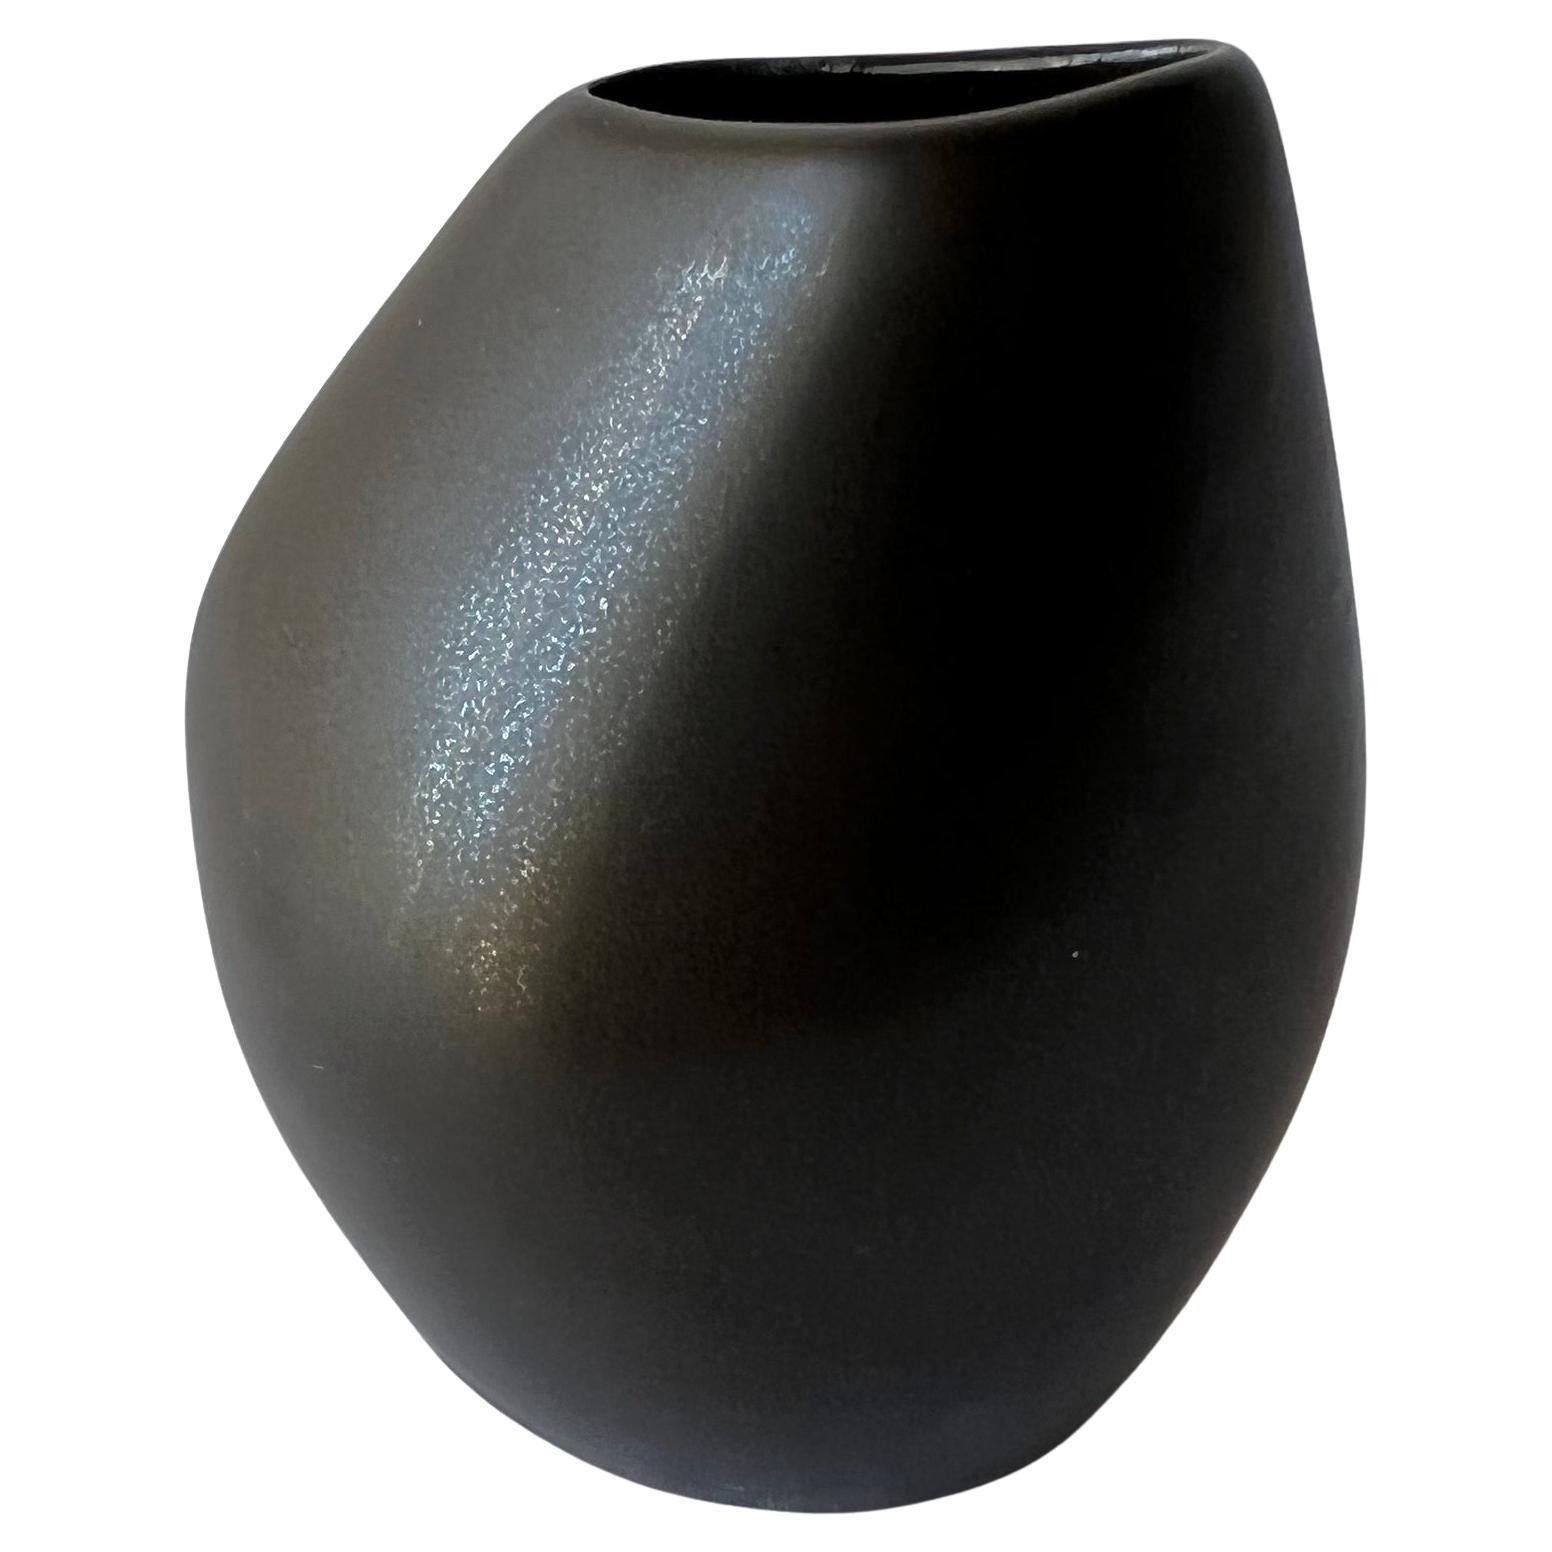 Lillemor Mannerheim - Vase en grès Mangania de style moderniste suédois par Upsala Ekeby